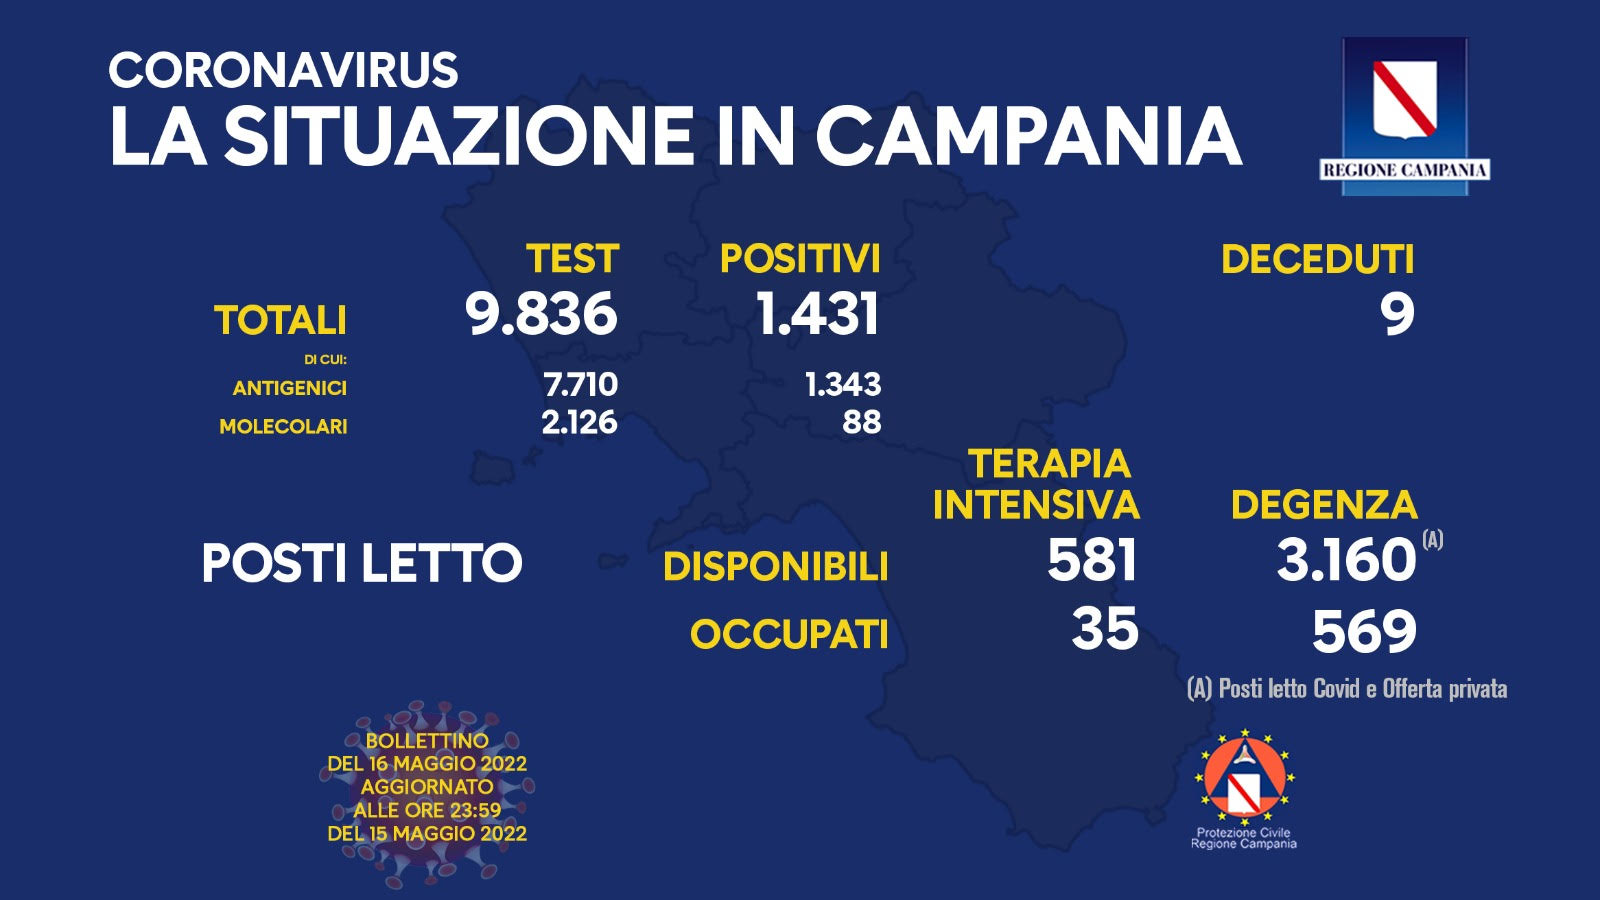 Covid 19 in Campania, bollettino 15 maggio: 1.431 positivi